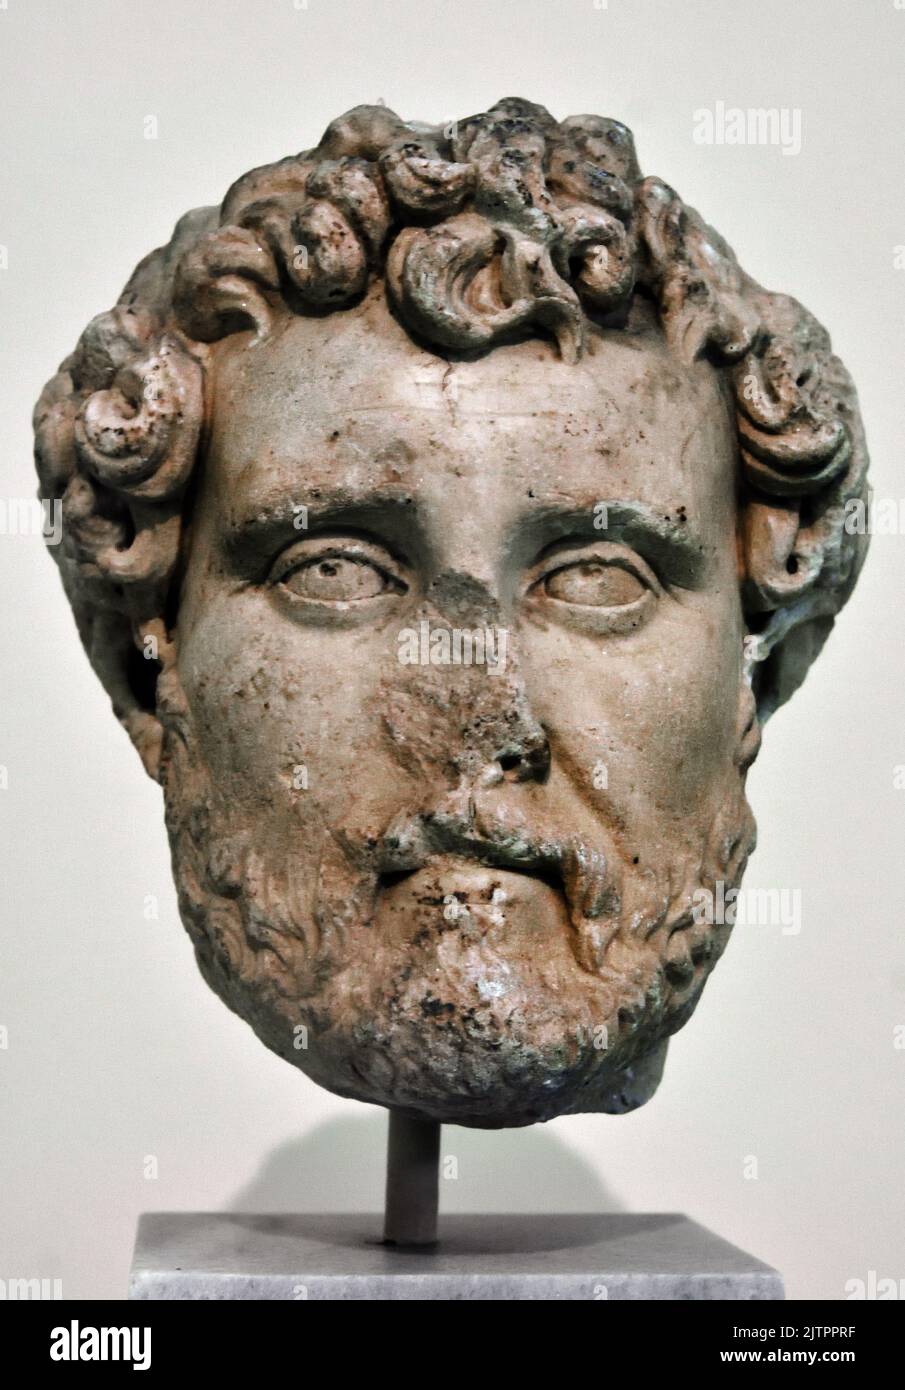 Colosal cabeza retrato del emperador romano Adriano (117-138 d.C.), encontrado en Atenas. Museo Arqueológico Nacional de Atenas. Mármol, Foto de stock